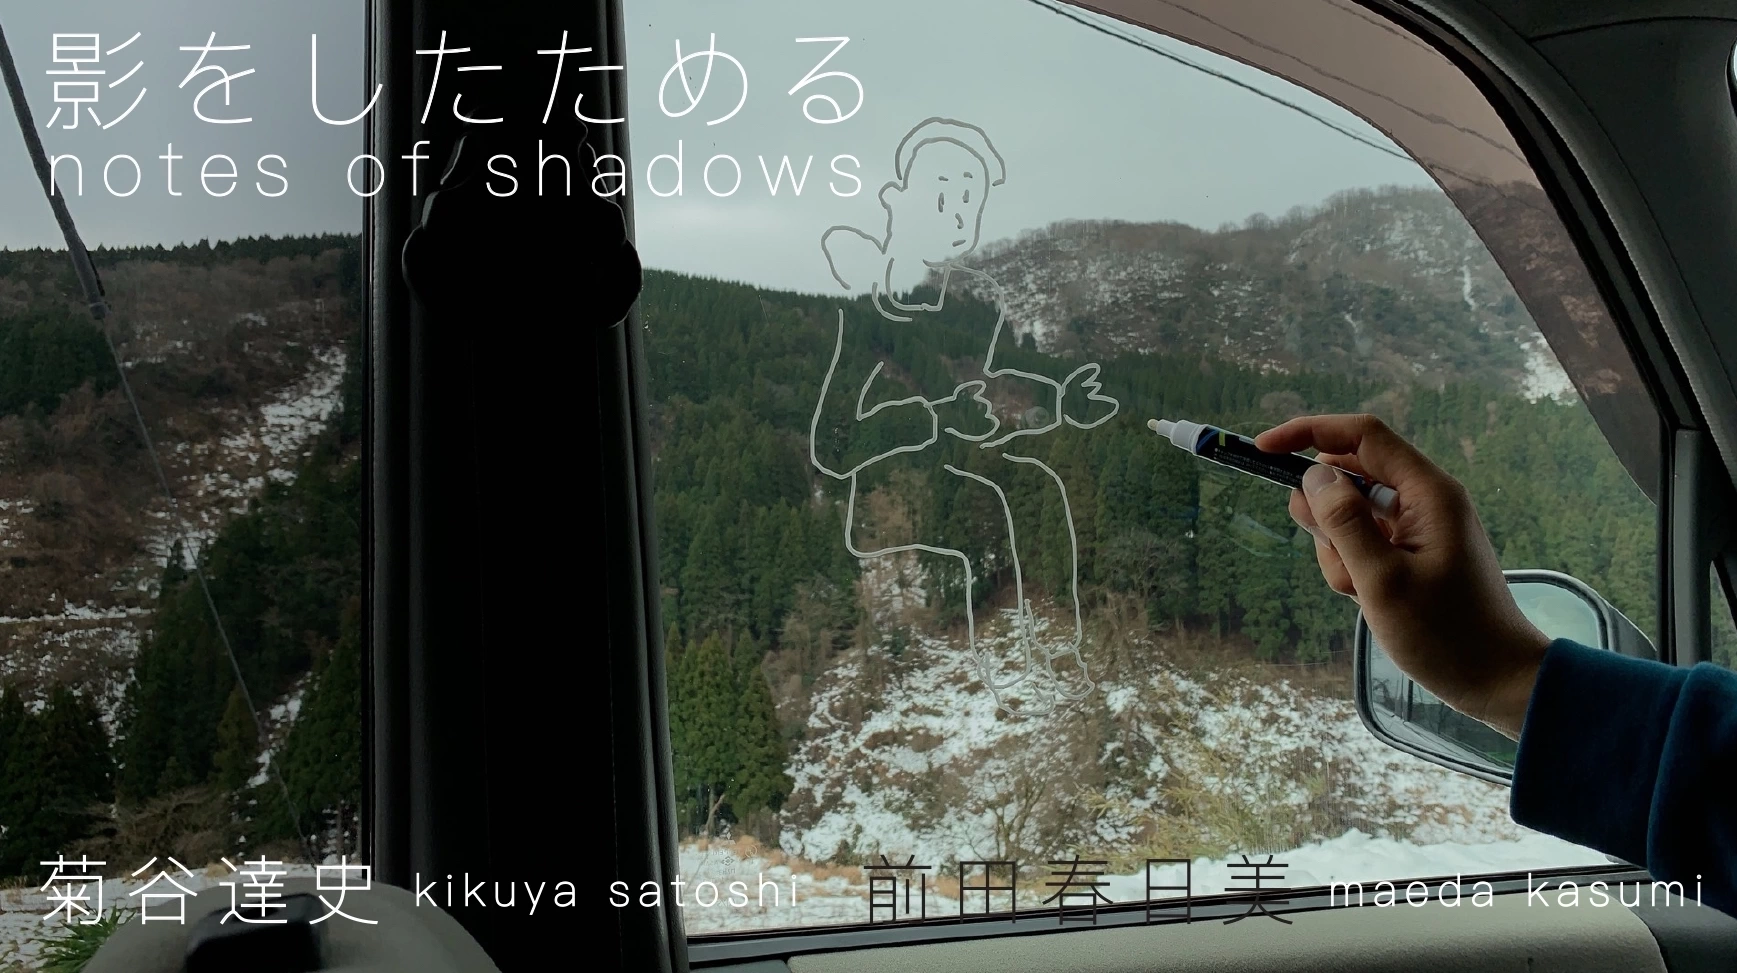 菊谷達史・前田春日美 2人展「影をしたためる notes of shadows」